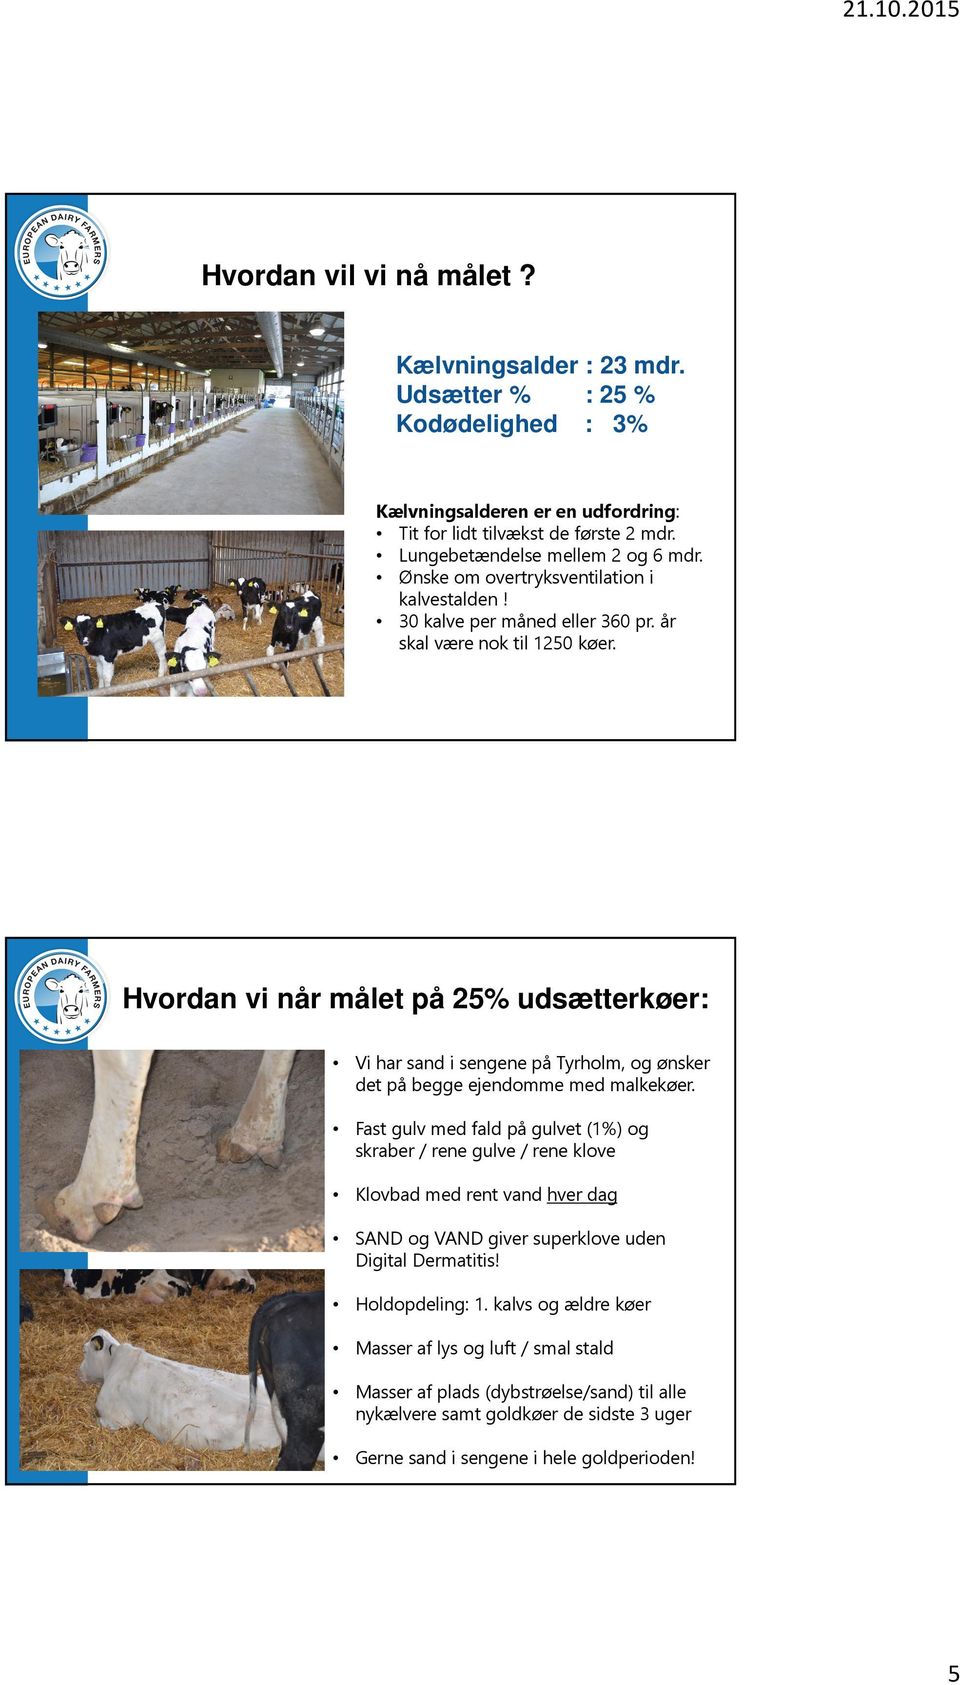 Hvordan vi når målet på 25% udsætterkøer: Vi har sand i sengene på Tyrholm, og ønsker det på begge ejendomme med malkekøer.